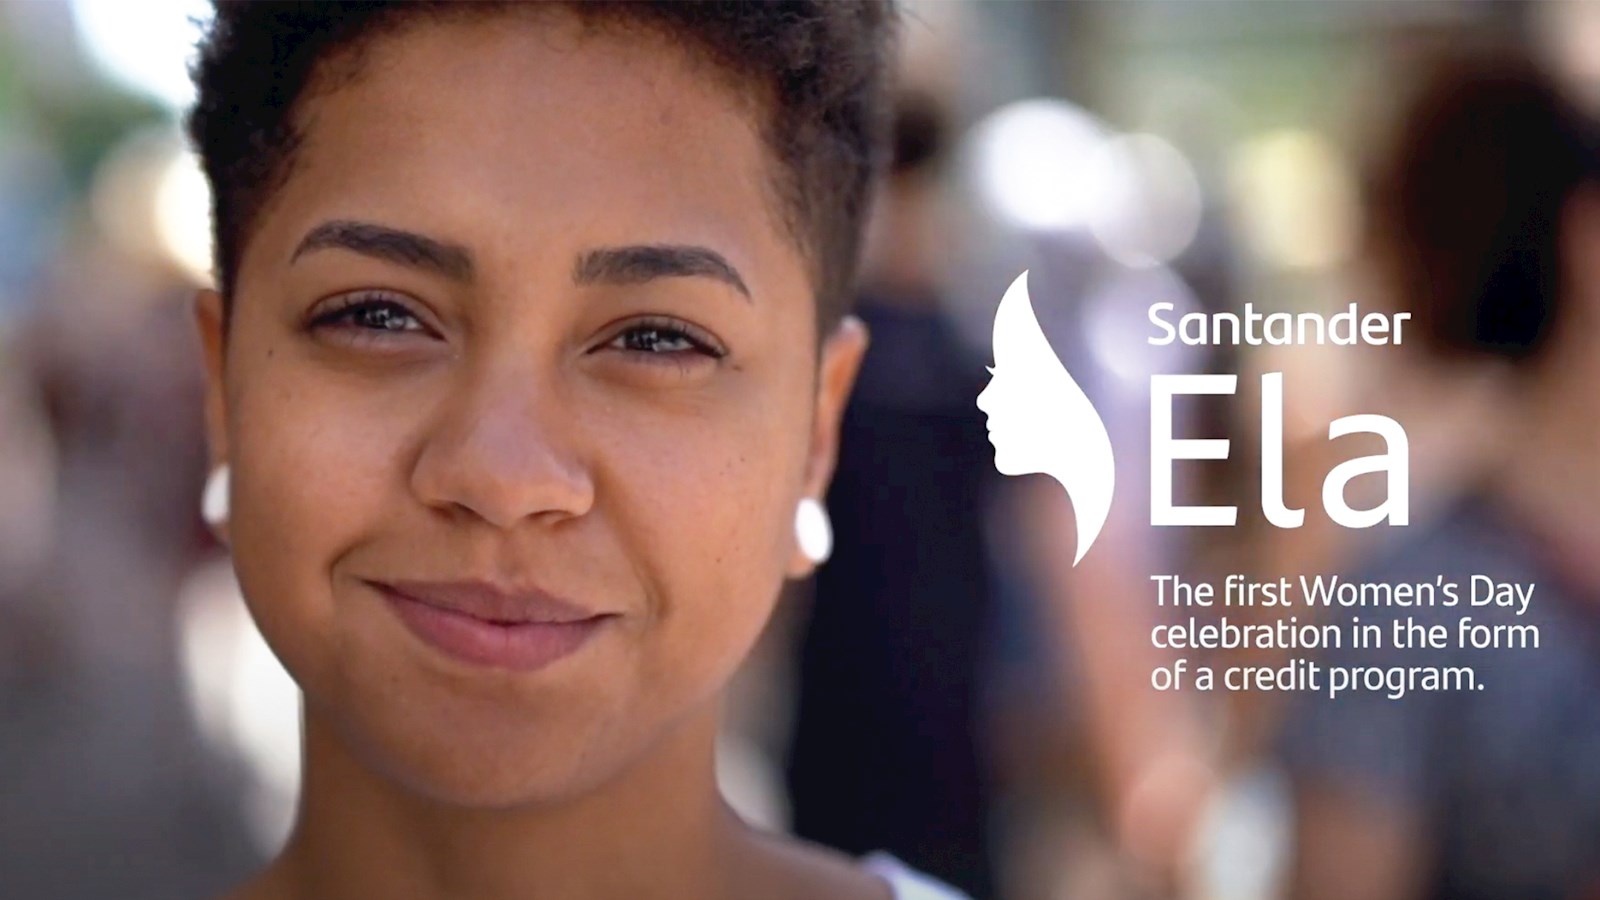 Image of a woman and Santander's Ela logo